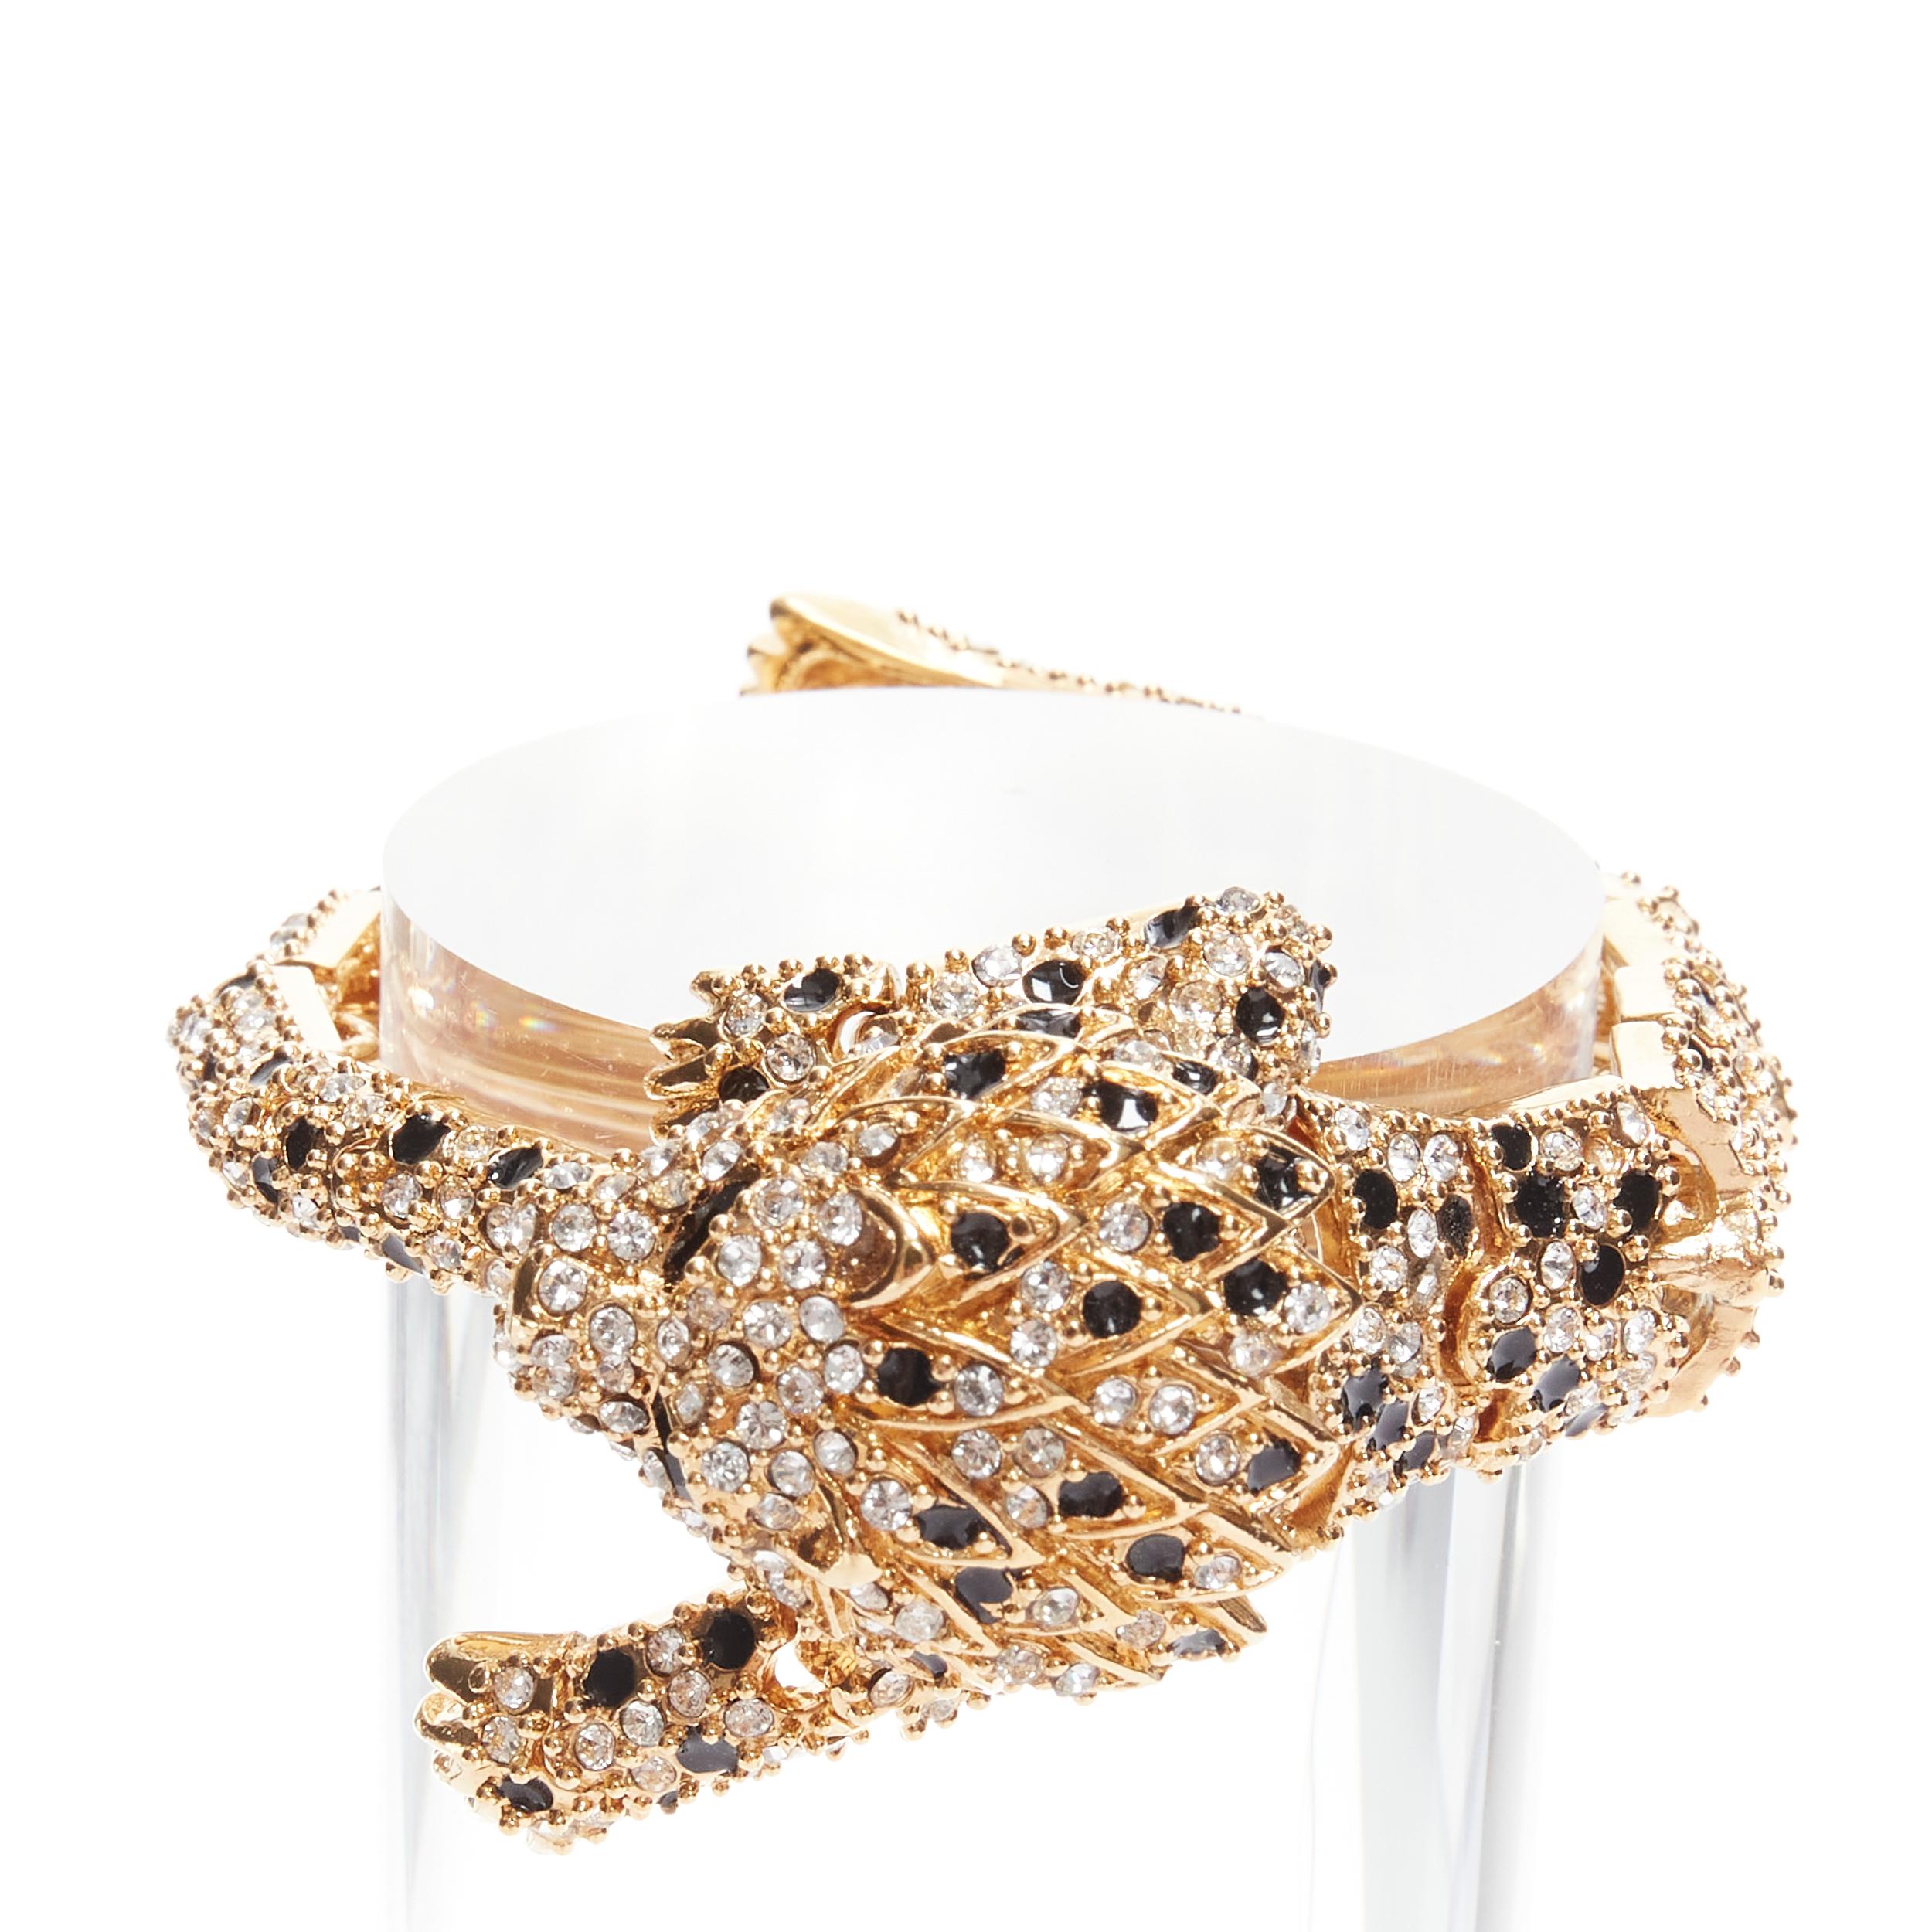 rare SAINT LAURENT Hedi Slimane crystal encrusted gold lion  cocktail bracelet 2